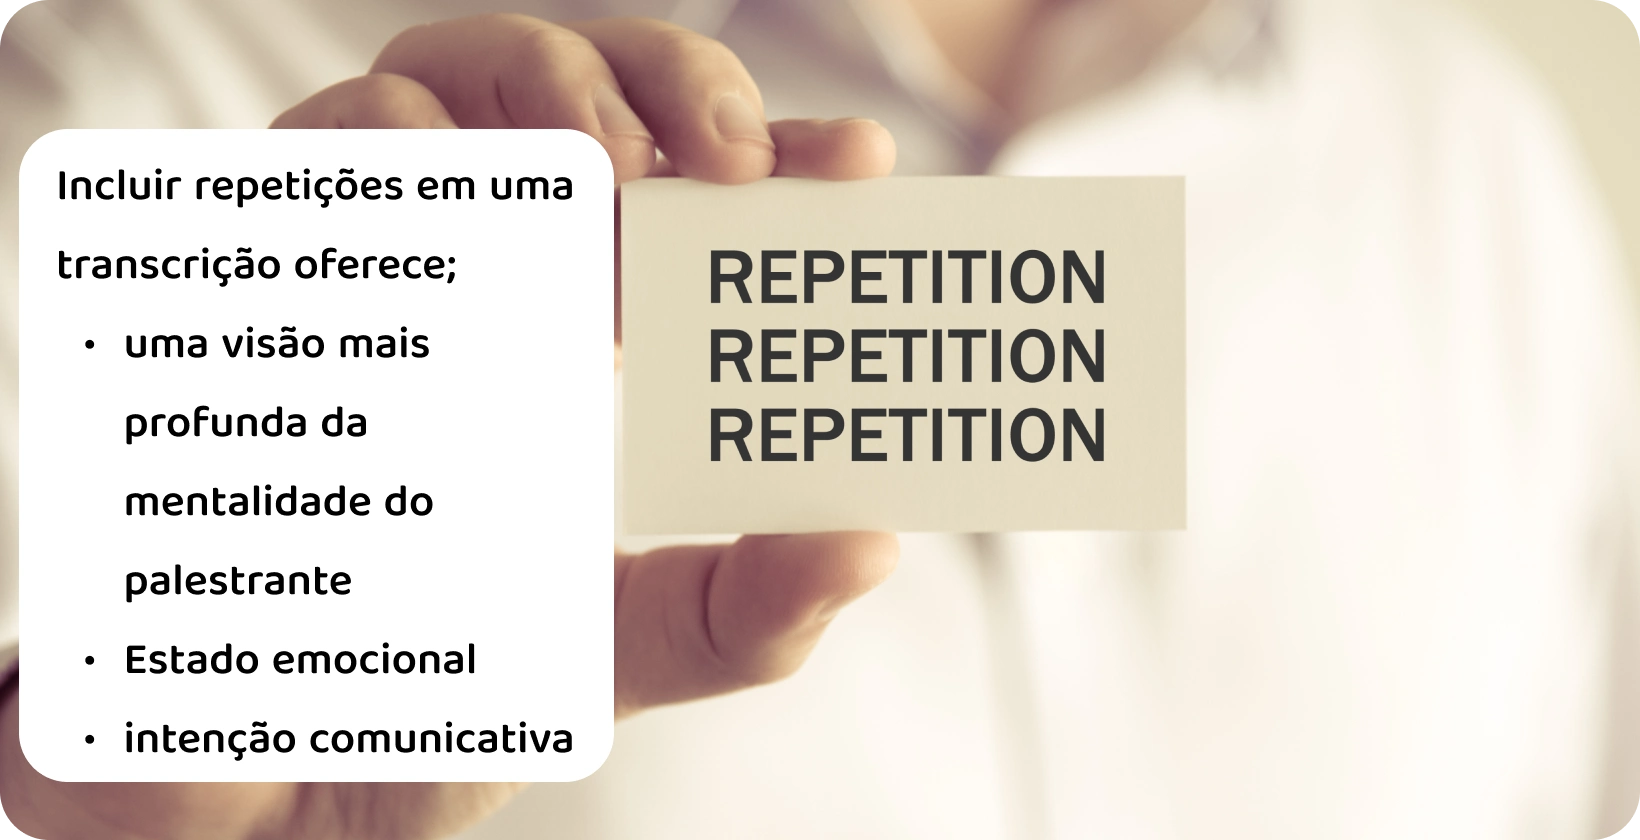 Um close-up de uma mão segurando um cartão com a palavra "Repetição", ilustrando o conceito de repetições em uma transcrição verbatim.